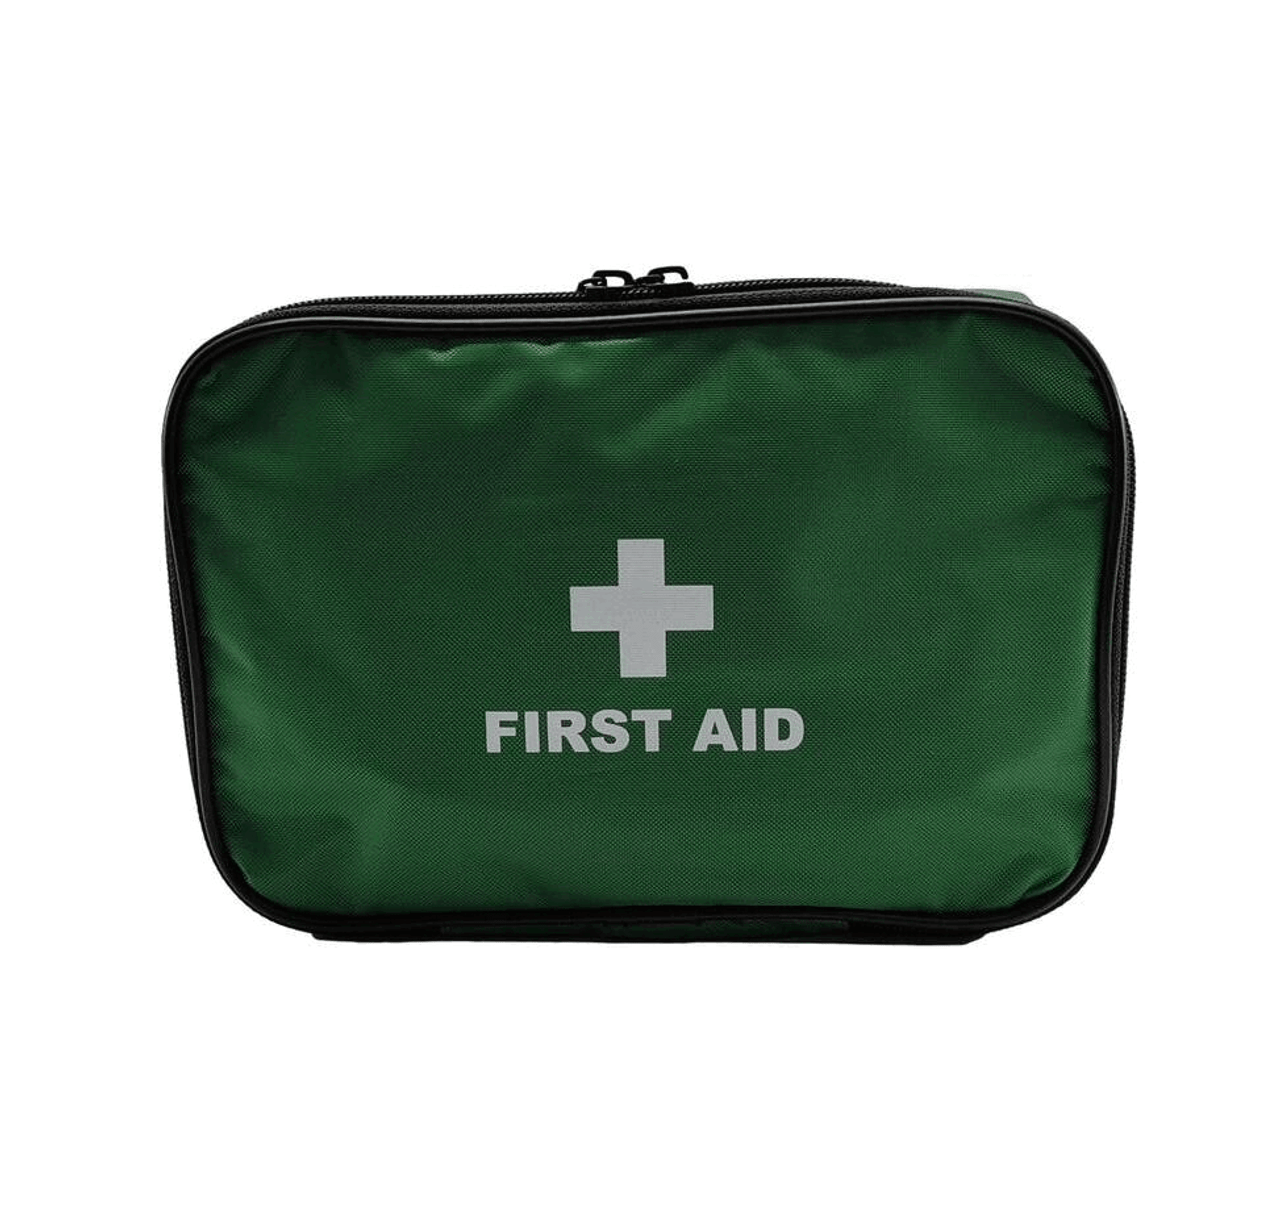 BS8599-2:2014 Compliant Vehicle Kit Medium - Jax First Aid